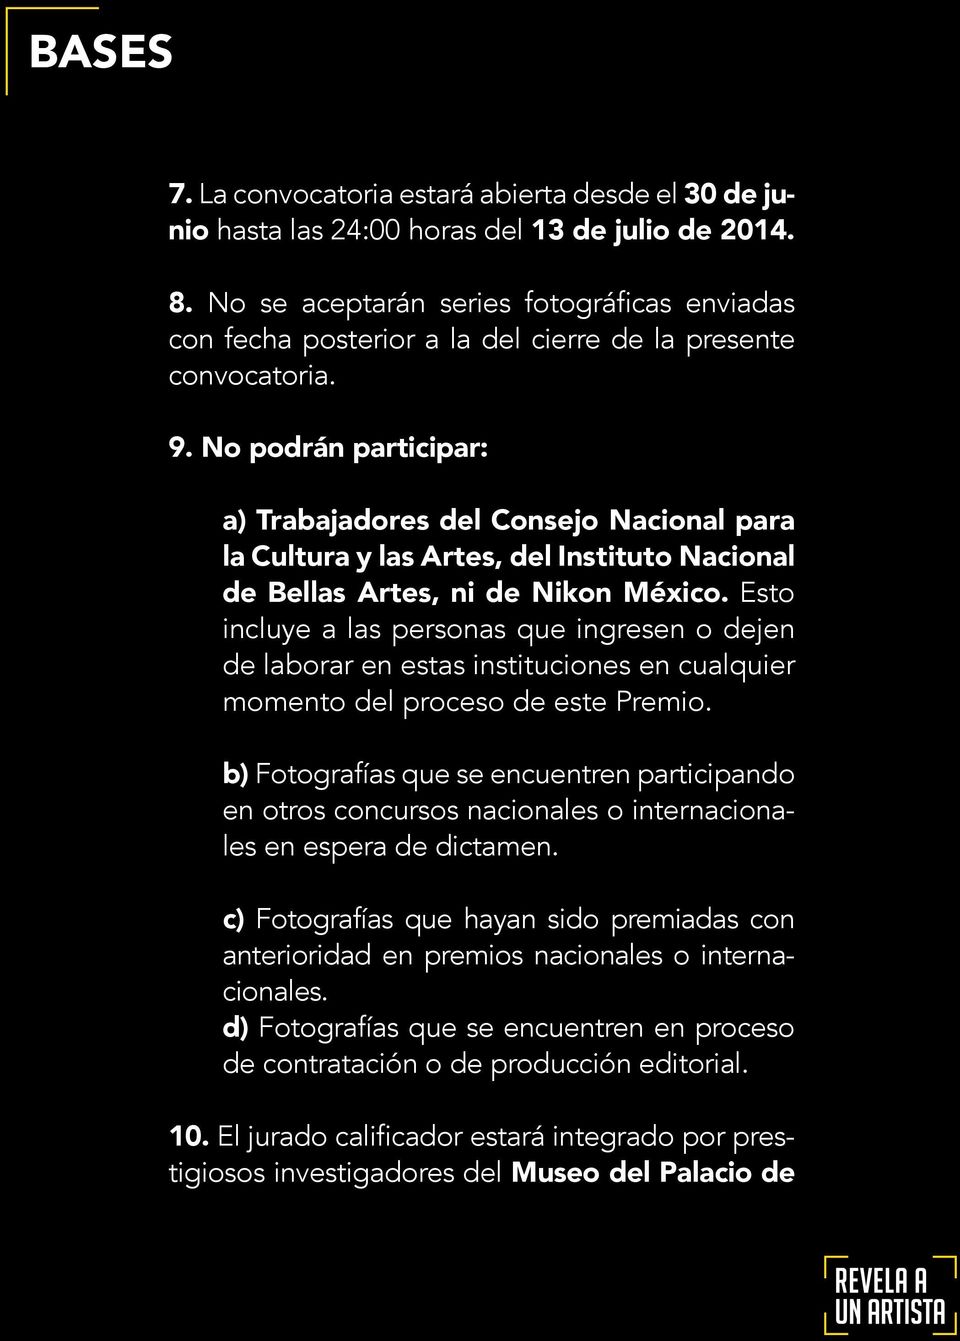 No podrán participar: a) Trabajadores del Consejo Nacional para la Cultura y las Artes, del Instituto Nacional de Bellas Artes, ni de Nikon México.